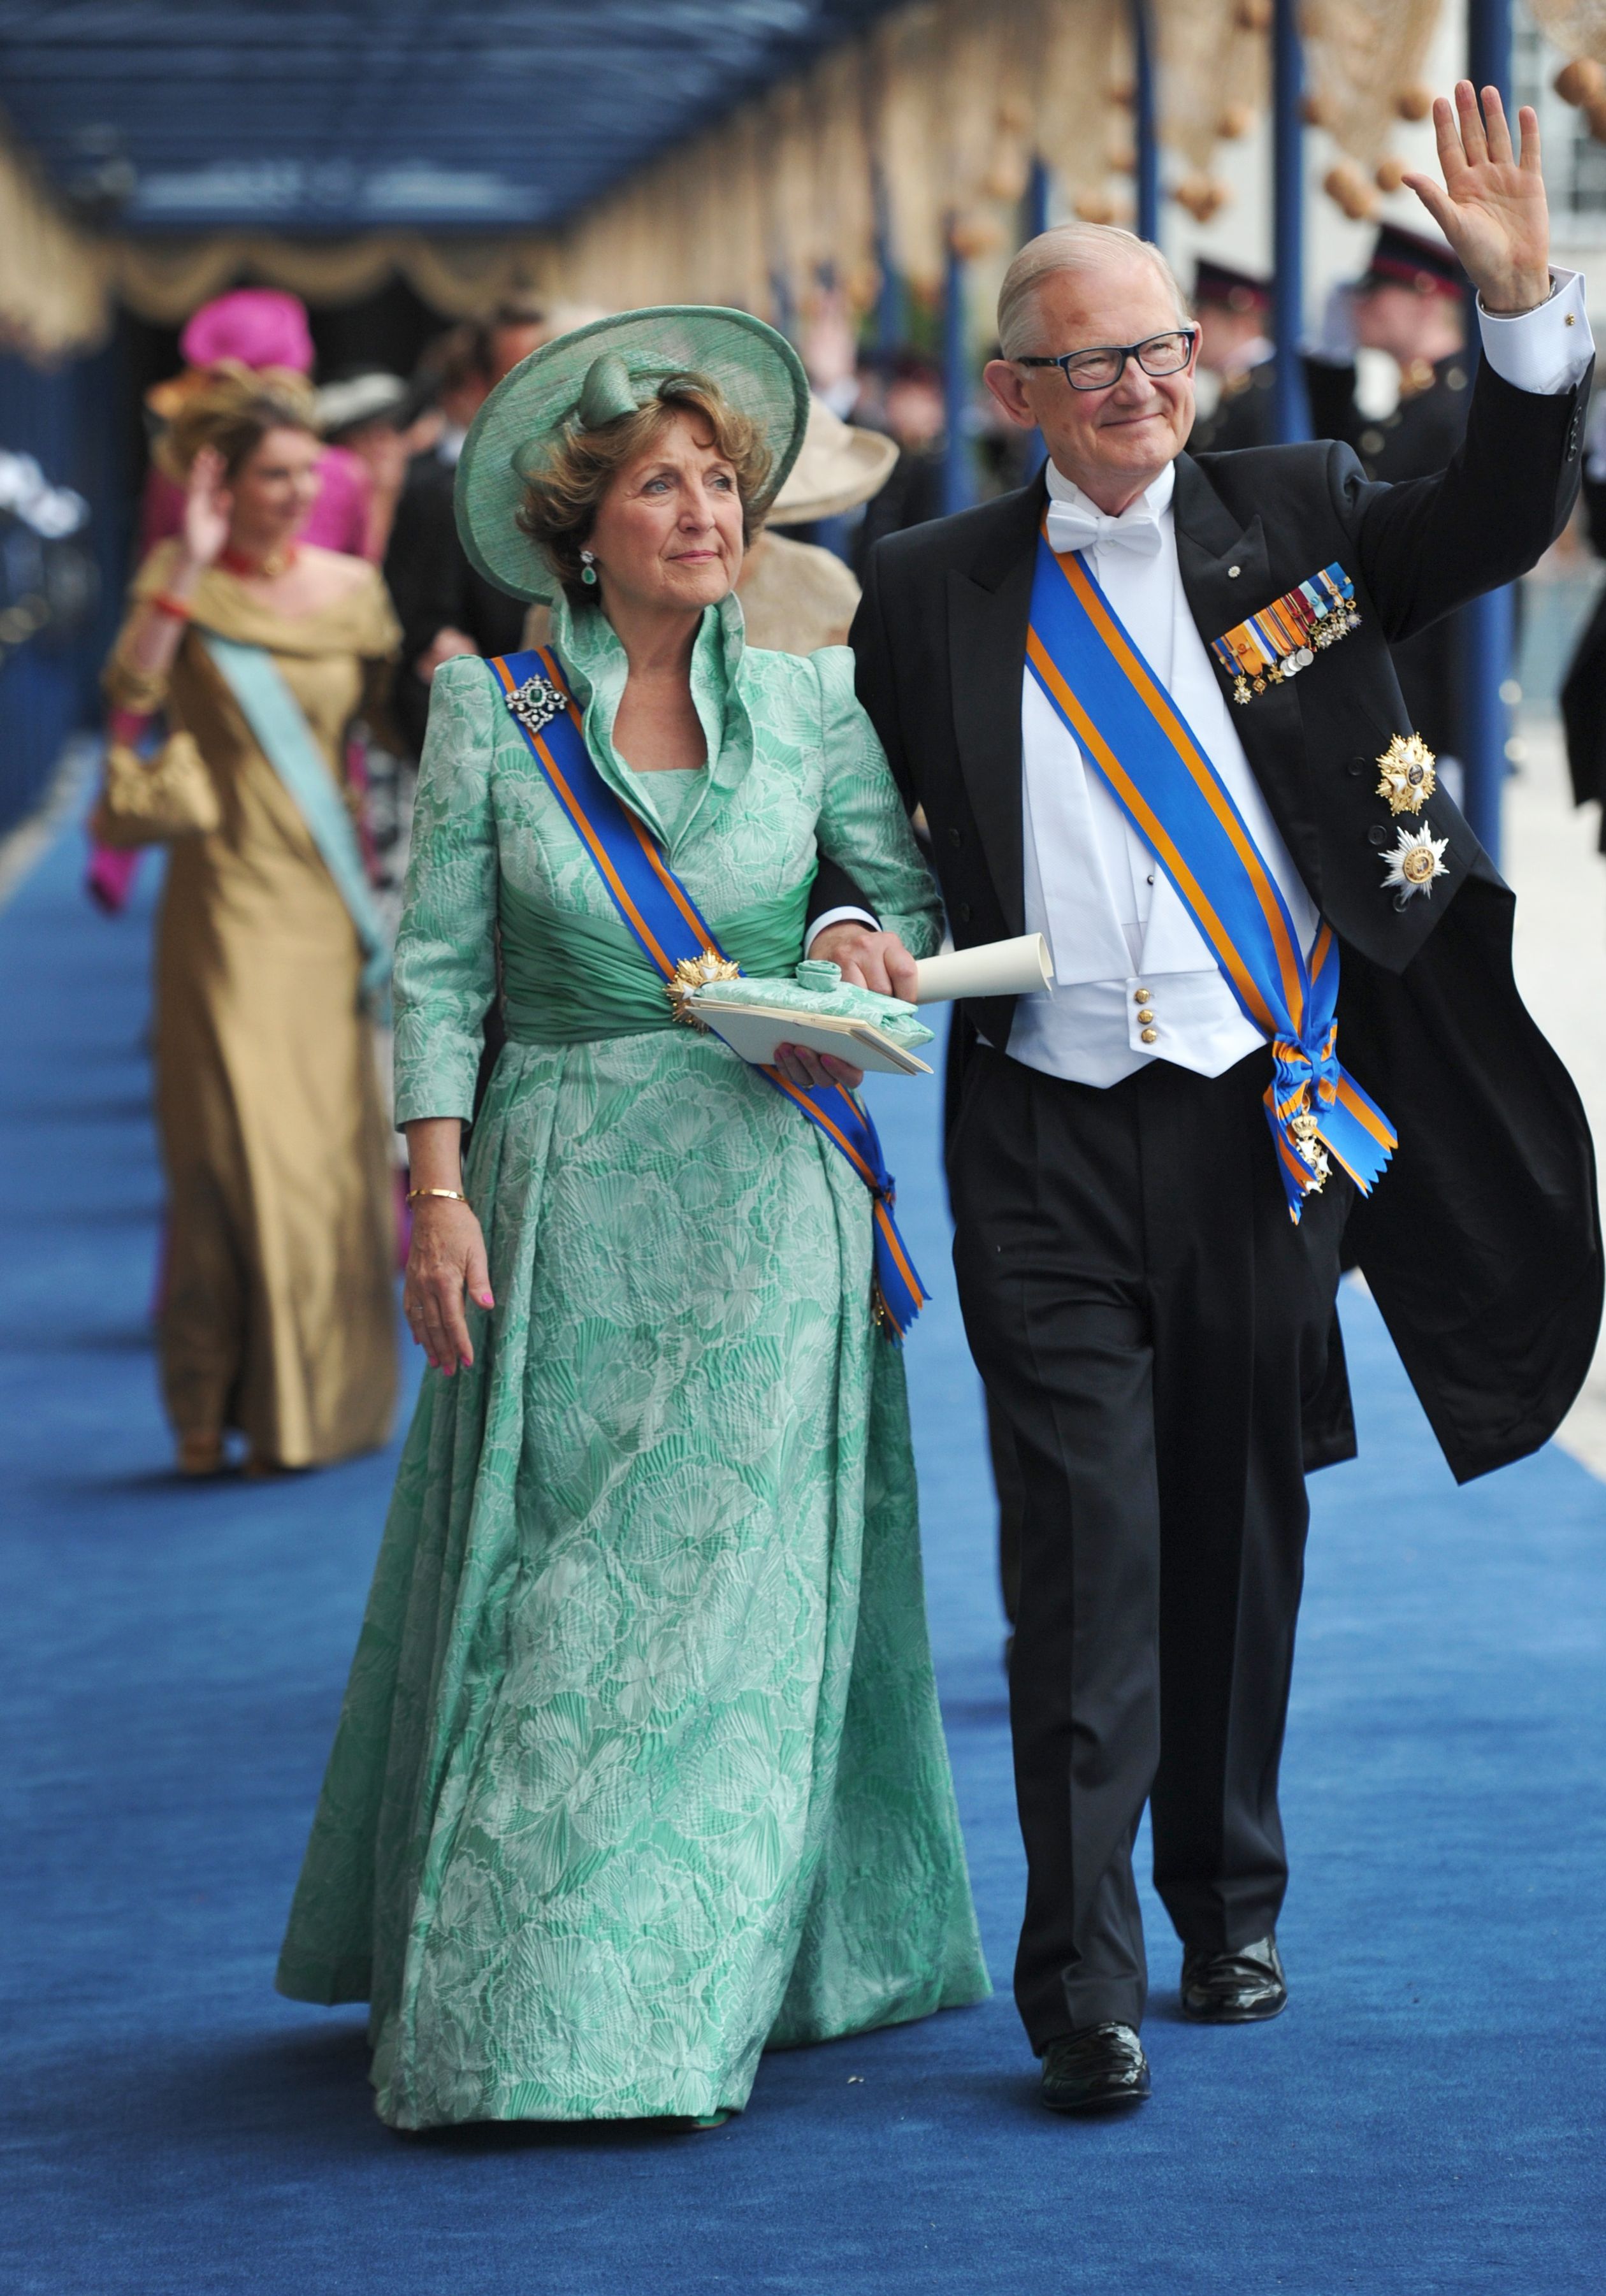 Prinses Margriet en Pieter van Vollenhoven verlaten de Nieuwe Kerk na de inhuldiging van koning